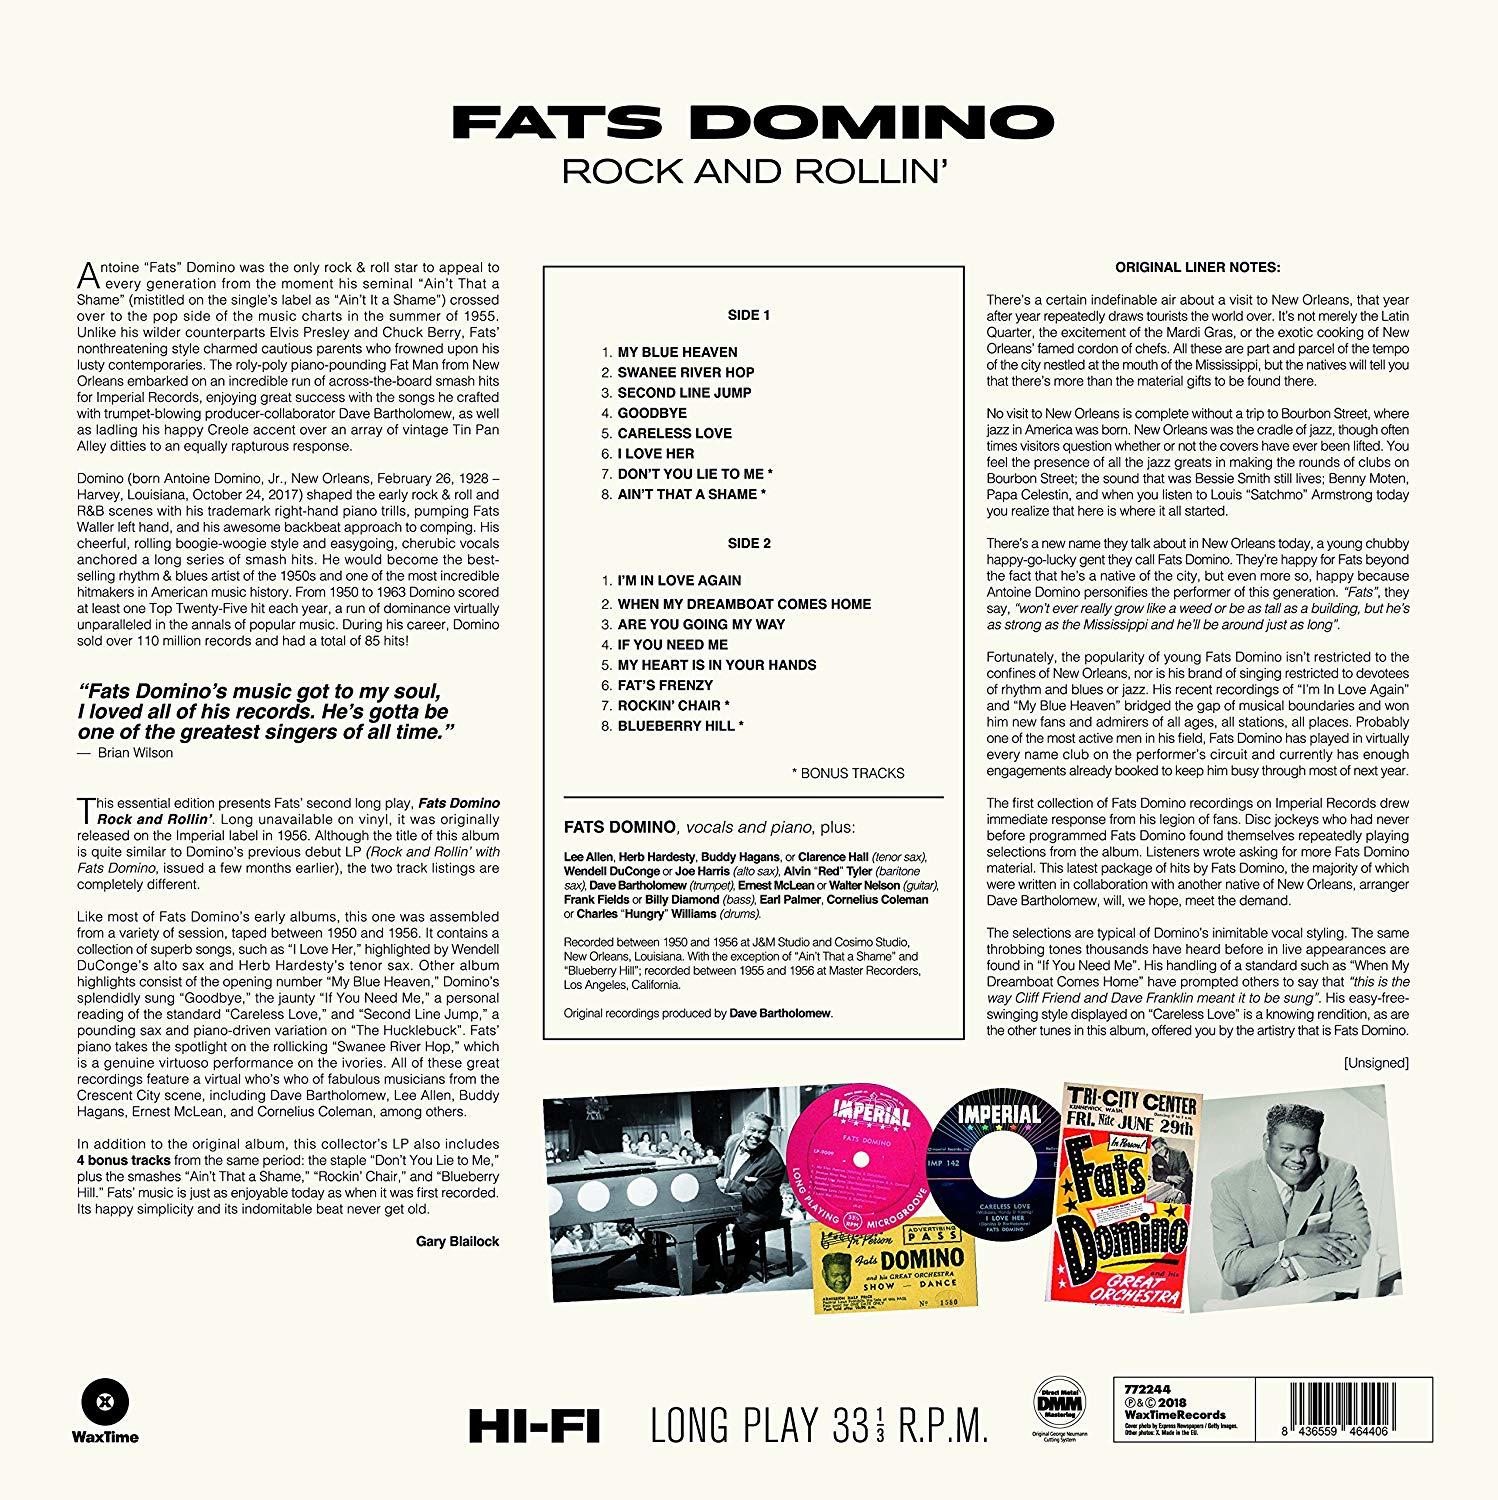 Tracks Fats Domino (Vinyl) - Bonus And Rollin\' + - 4 Rock Fats Domino